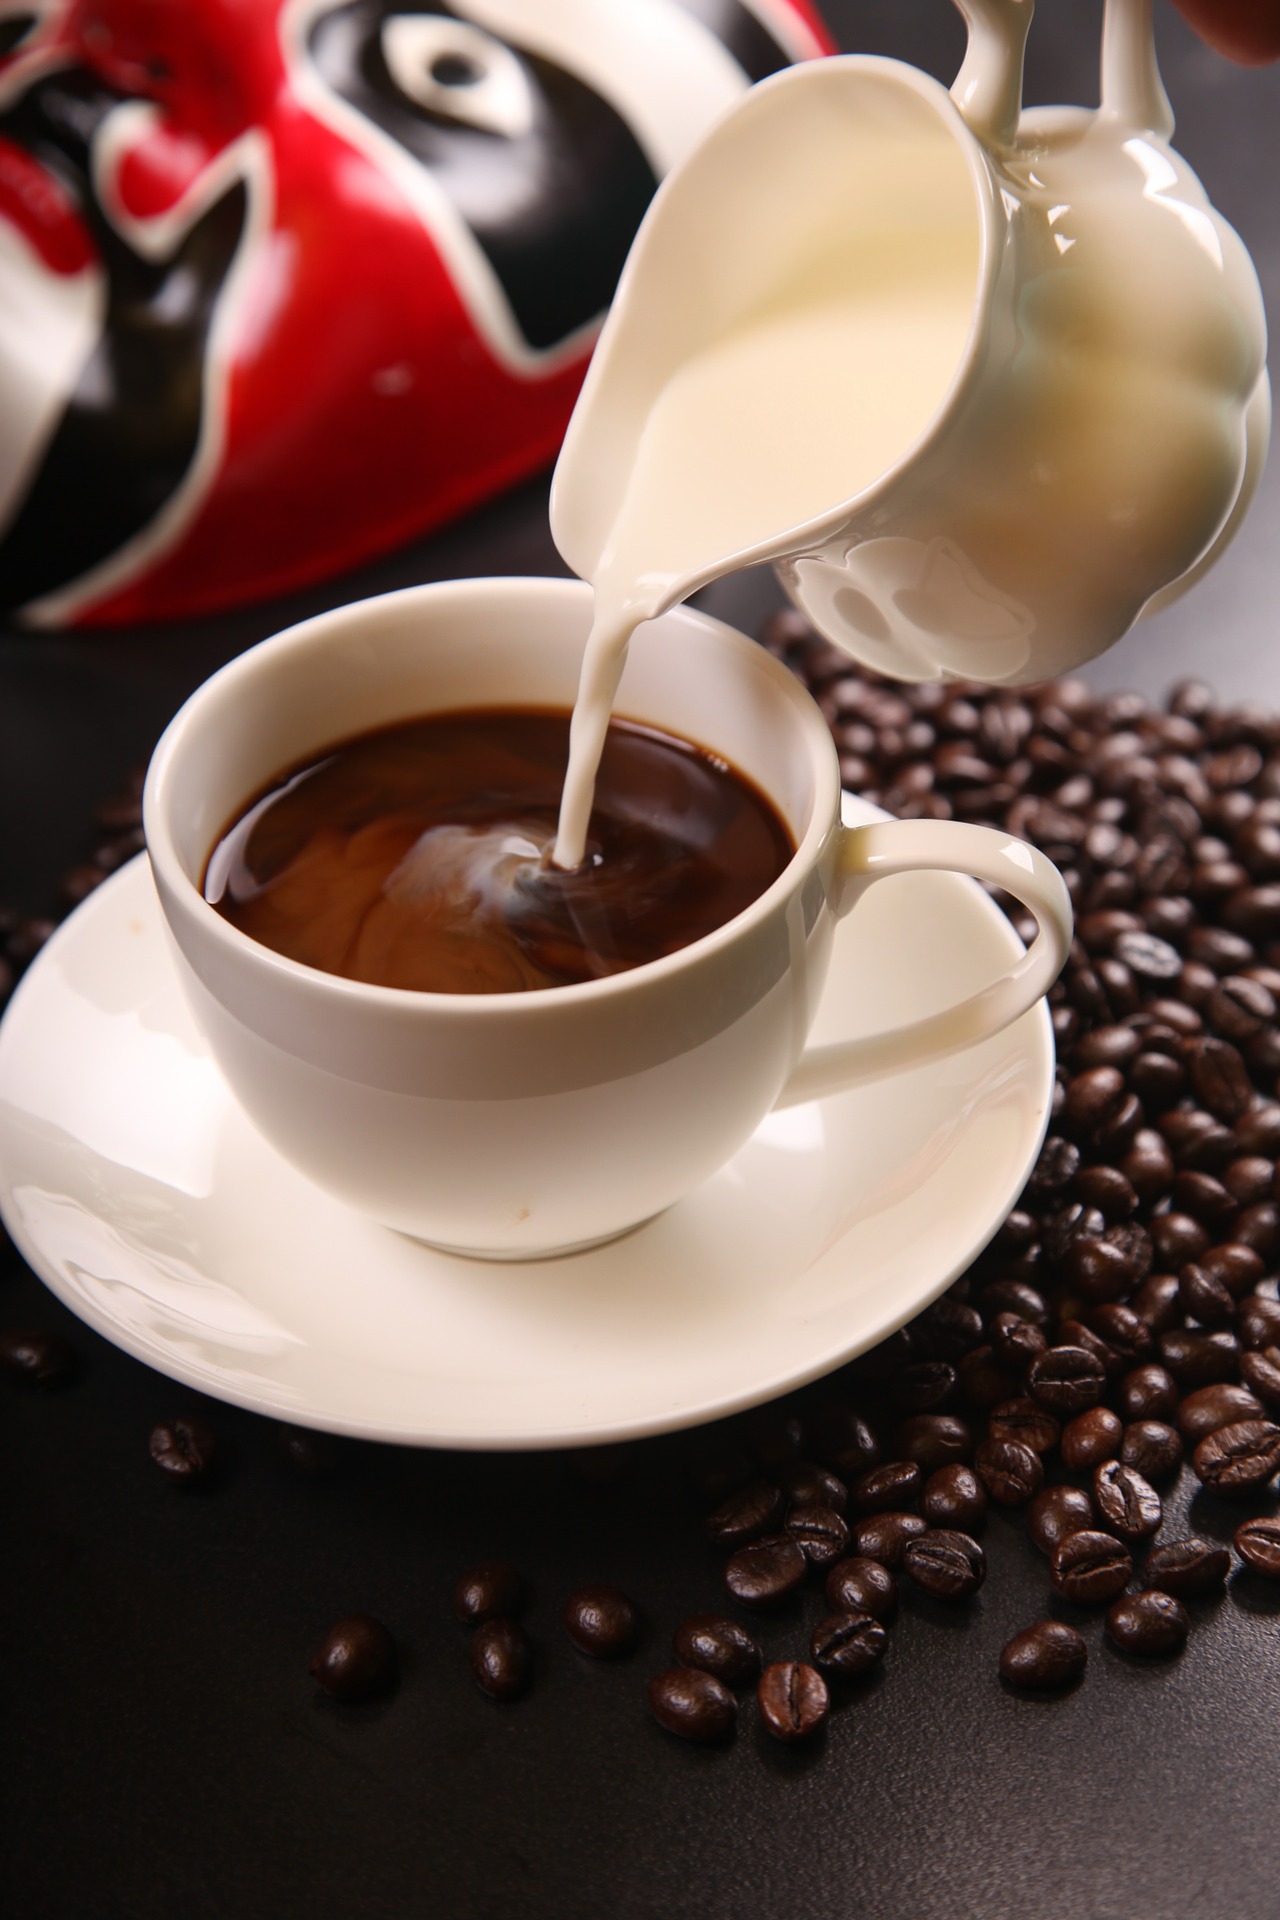 高咖啡摄入量可能与低前列腺癌风险有关